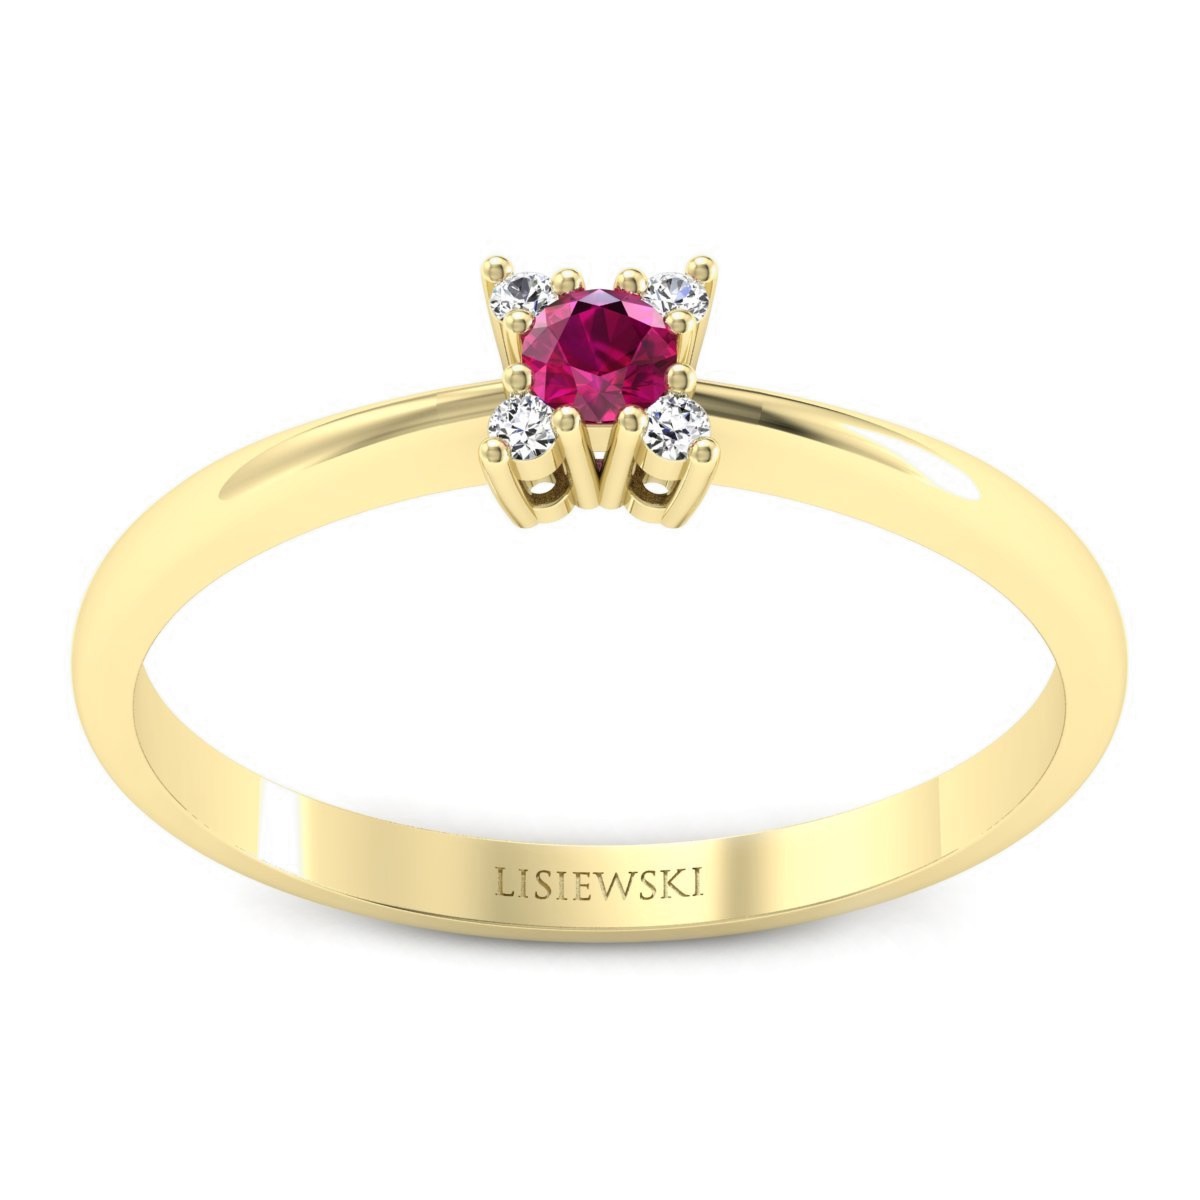 Butterfly - Złoty pierścionek z rubinem i diamentami